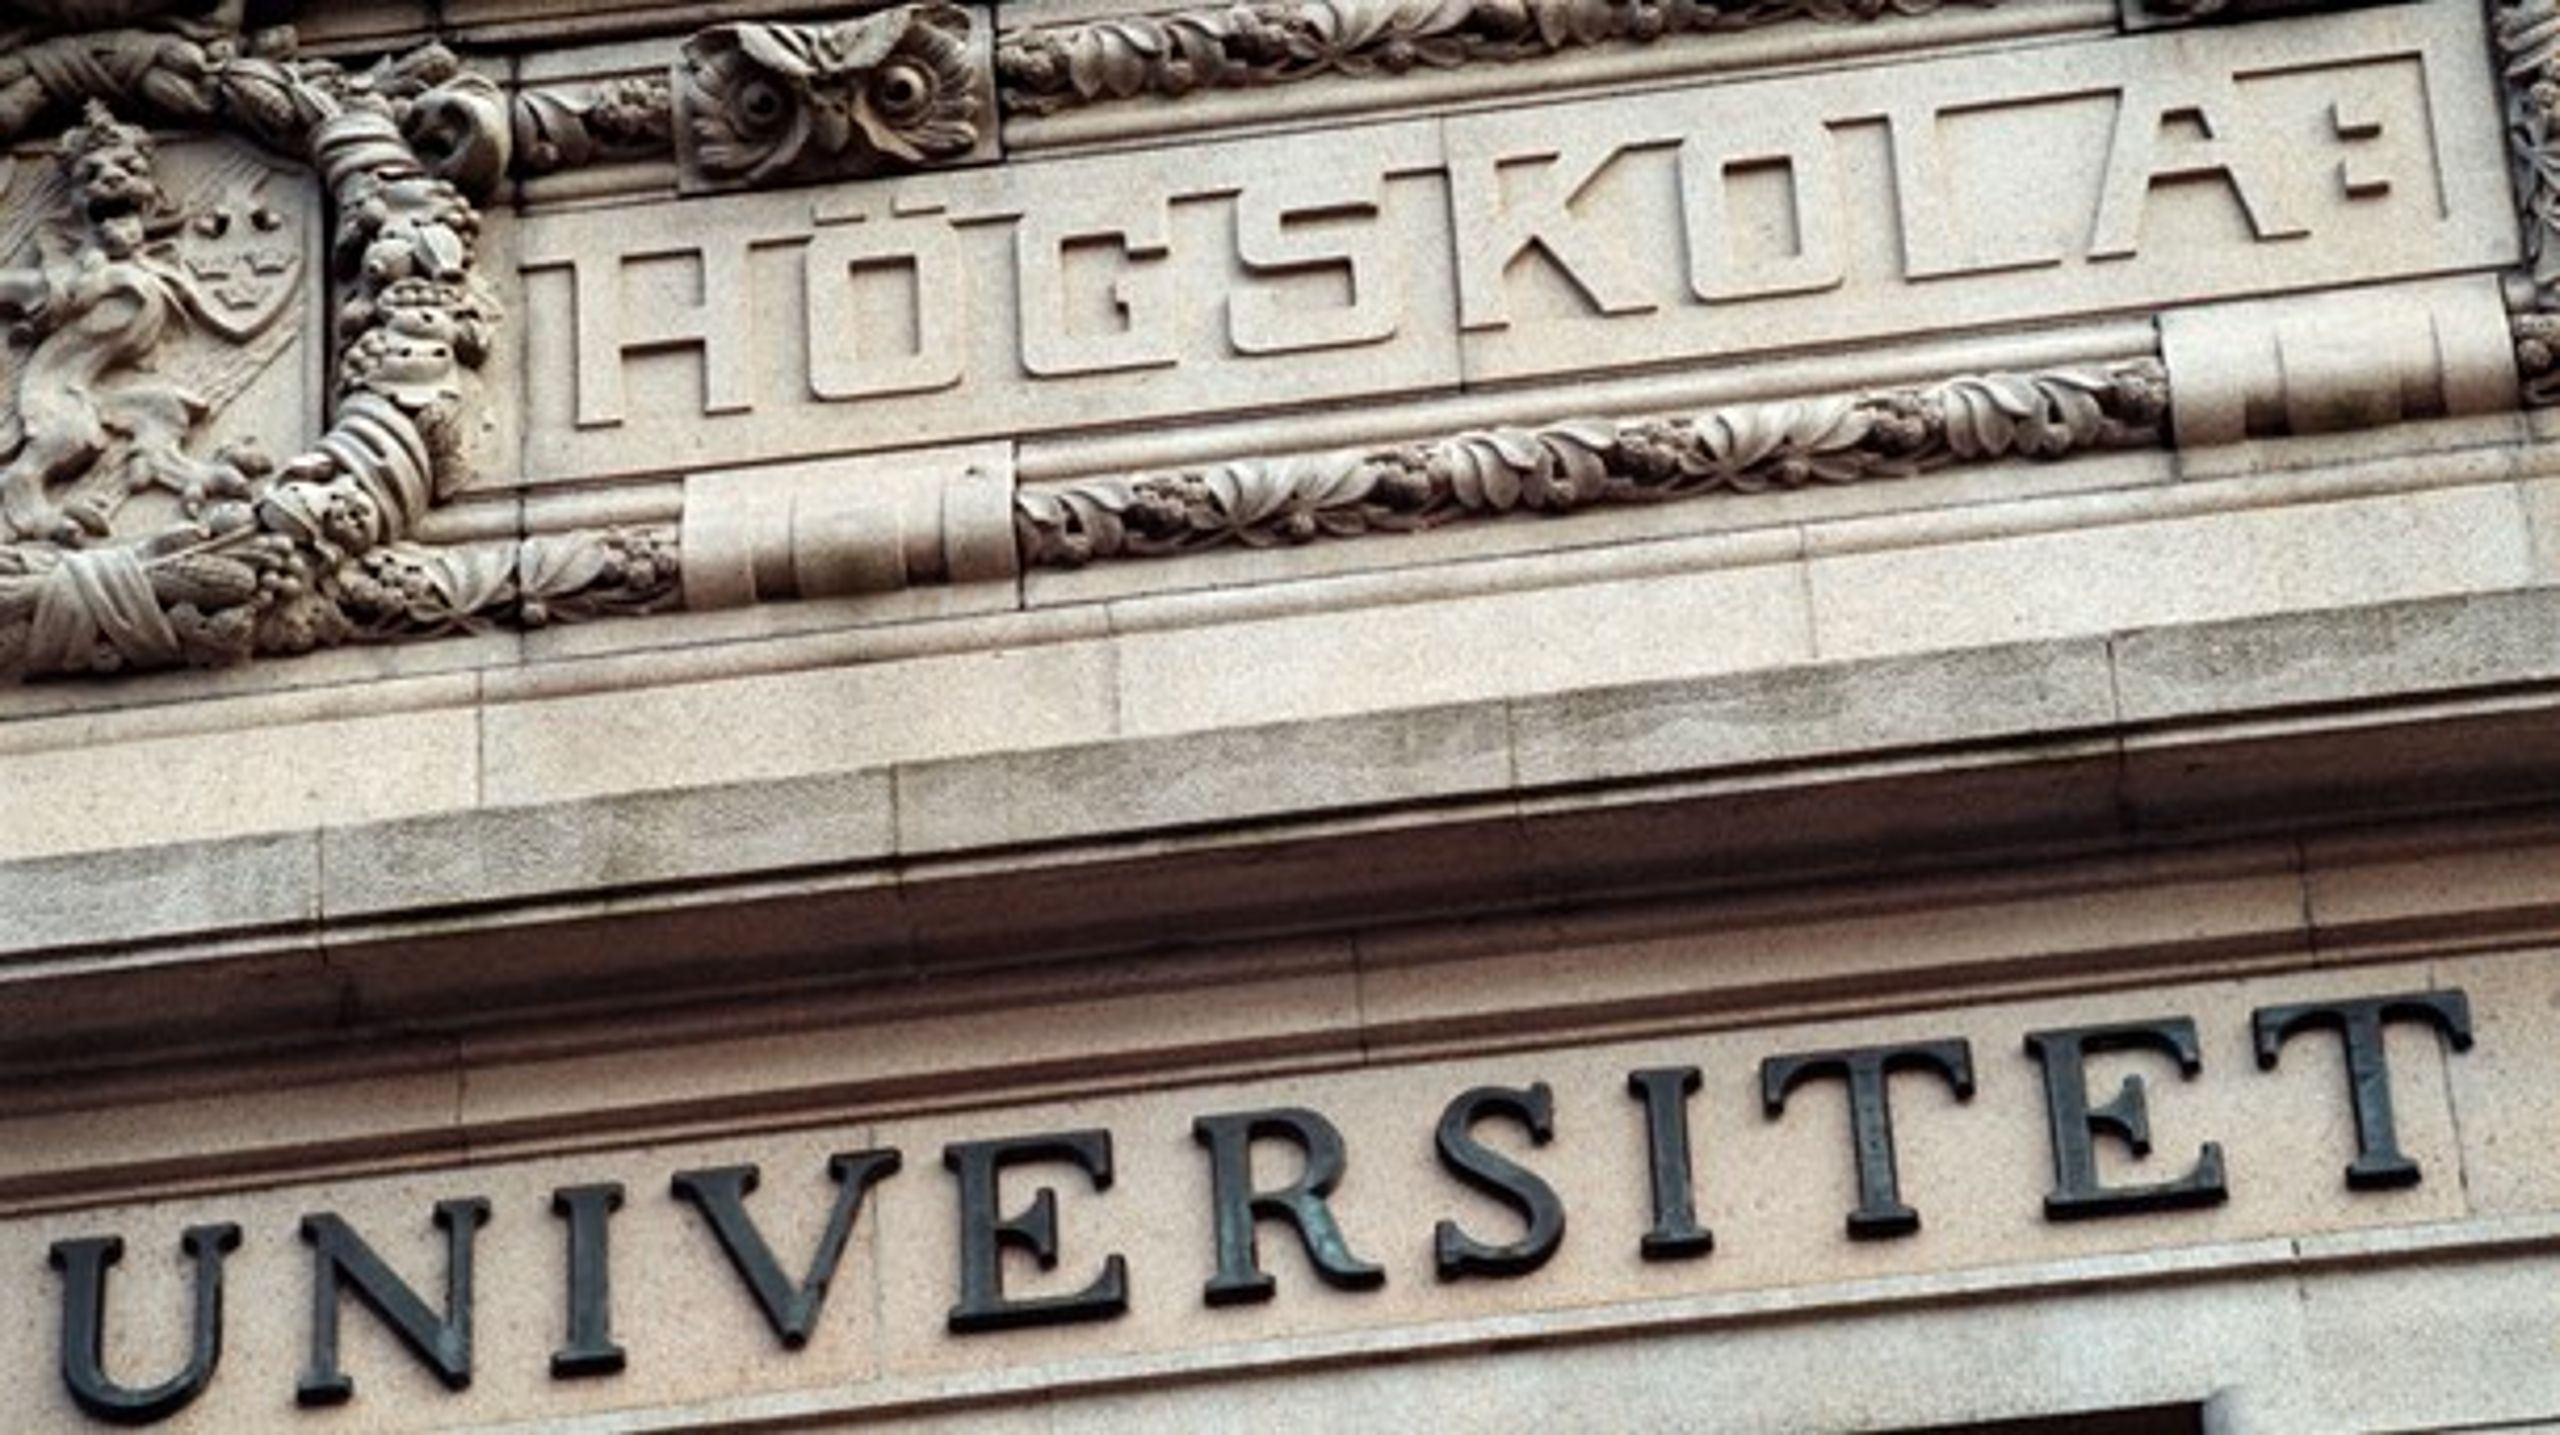 7 av 12 ämneslärarutbildningar vid Göteborgs universitet har ifrågasatt kvalitet.